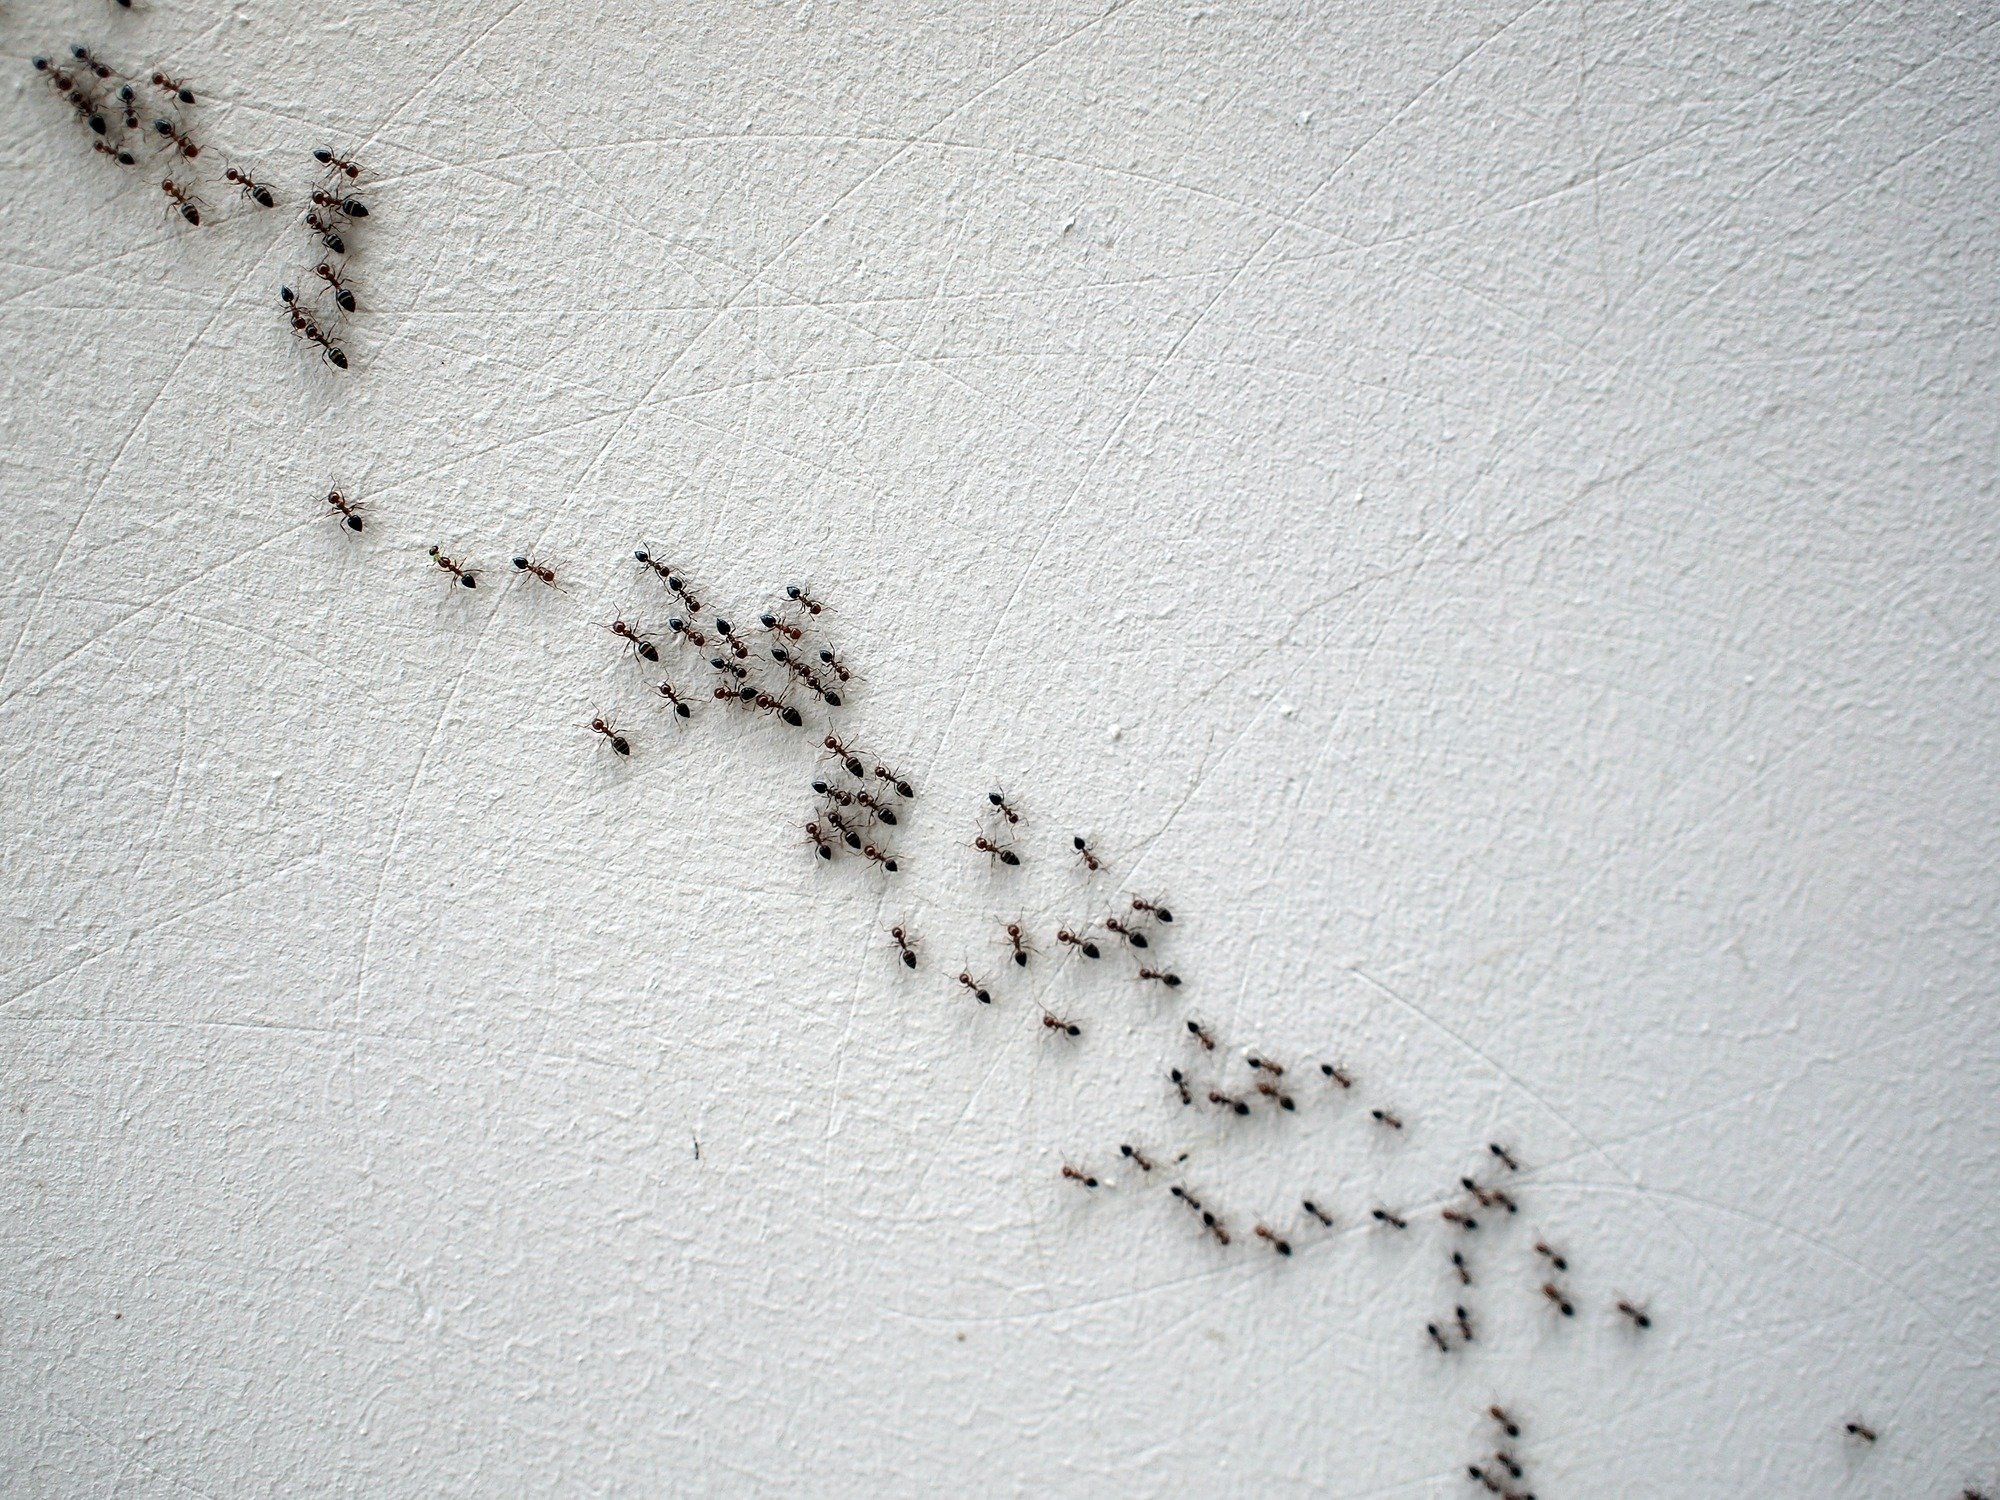 Читать серые муравьи